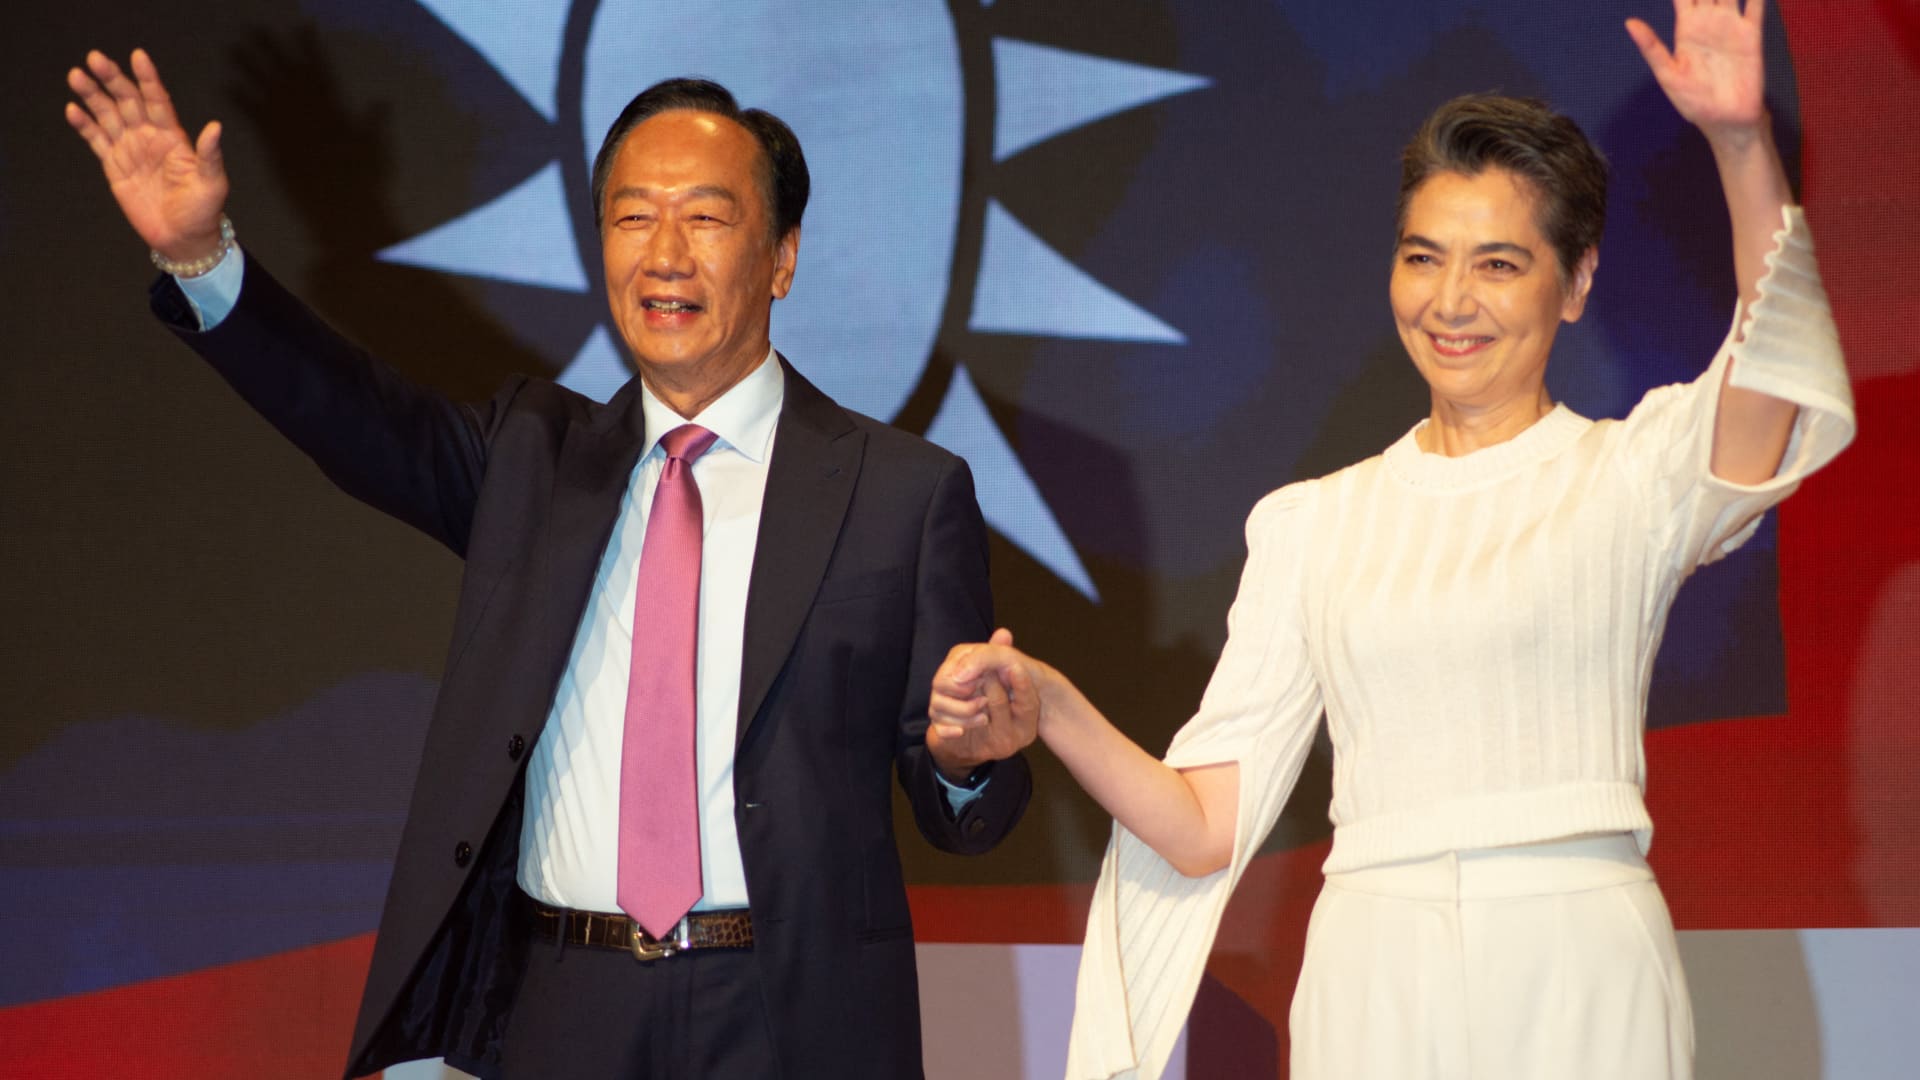 富士康创始人兼前董事长、台湾独立总统候选人郭台铭（左）与副总统夏丽贝于 2023 年 9 月 14 日在台北举行的新闻发布会上携手。